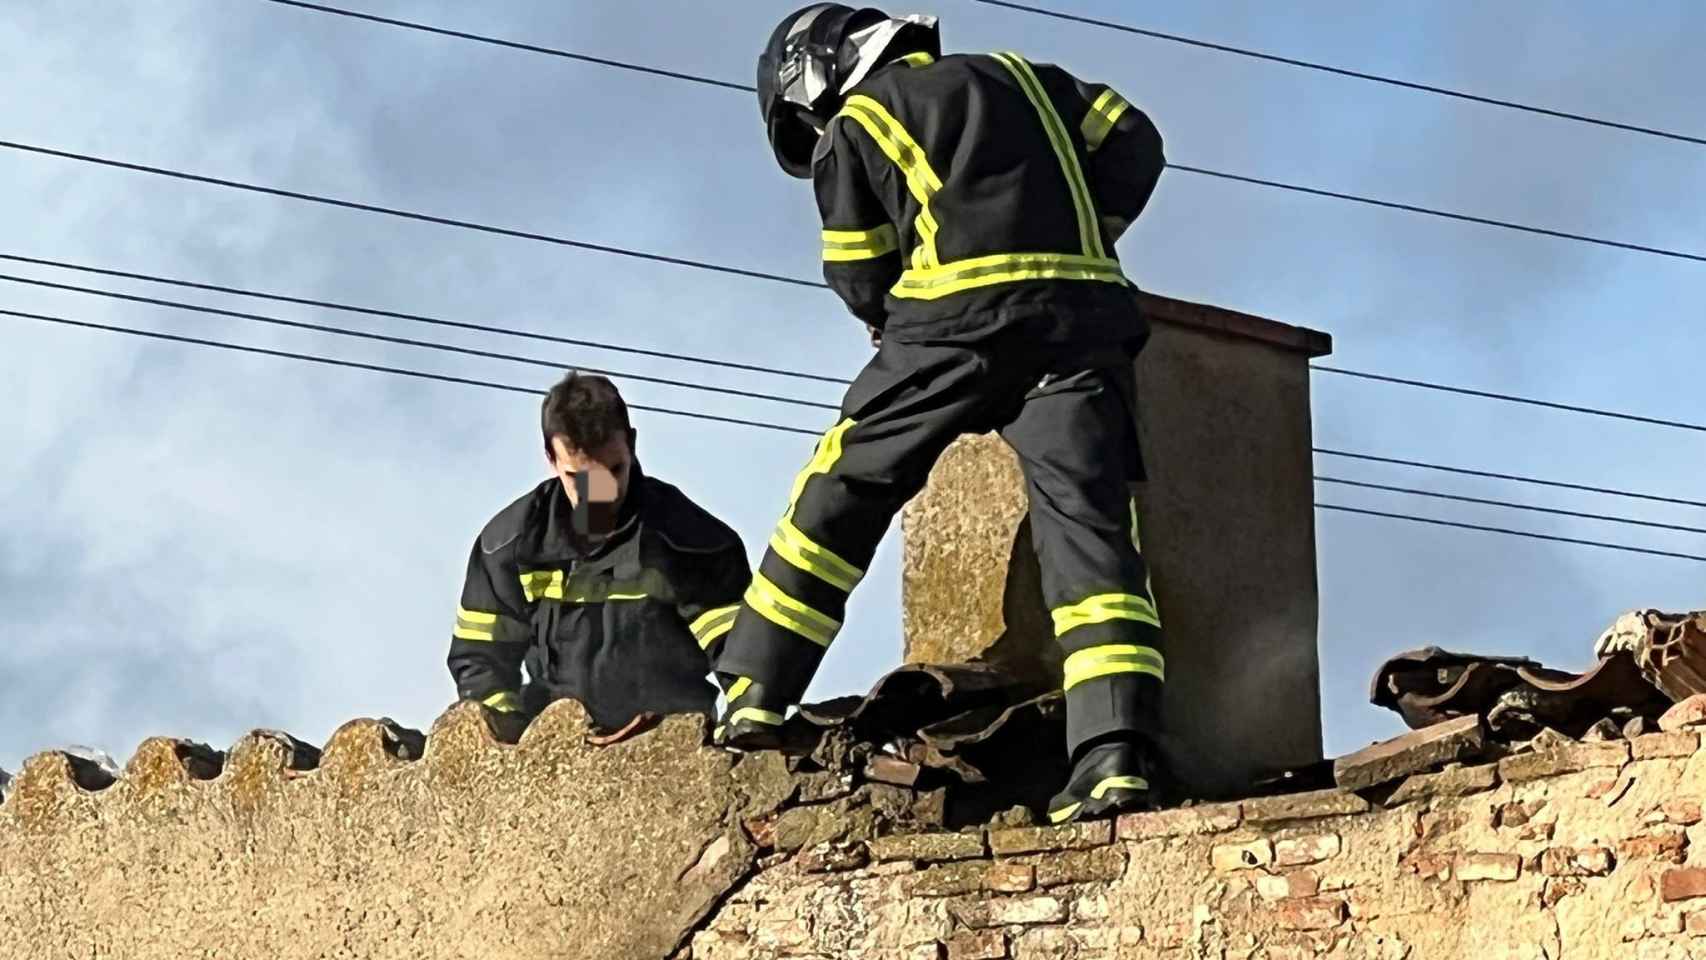 Los Bomberos de Ávila sofocan un fuego en una chimenea